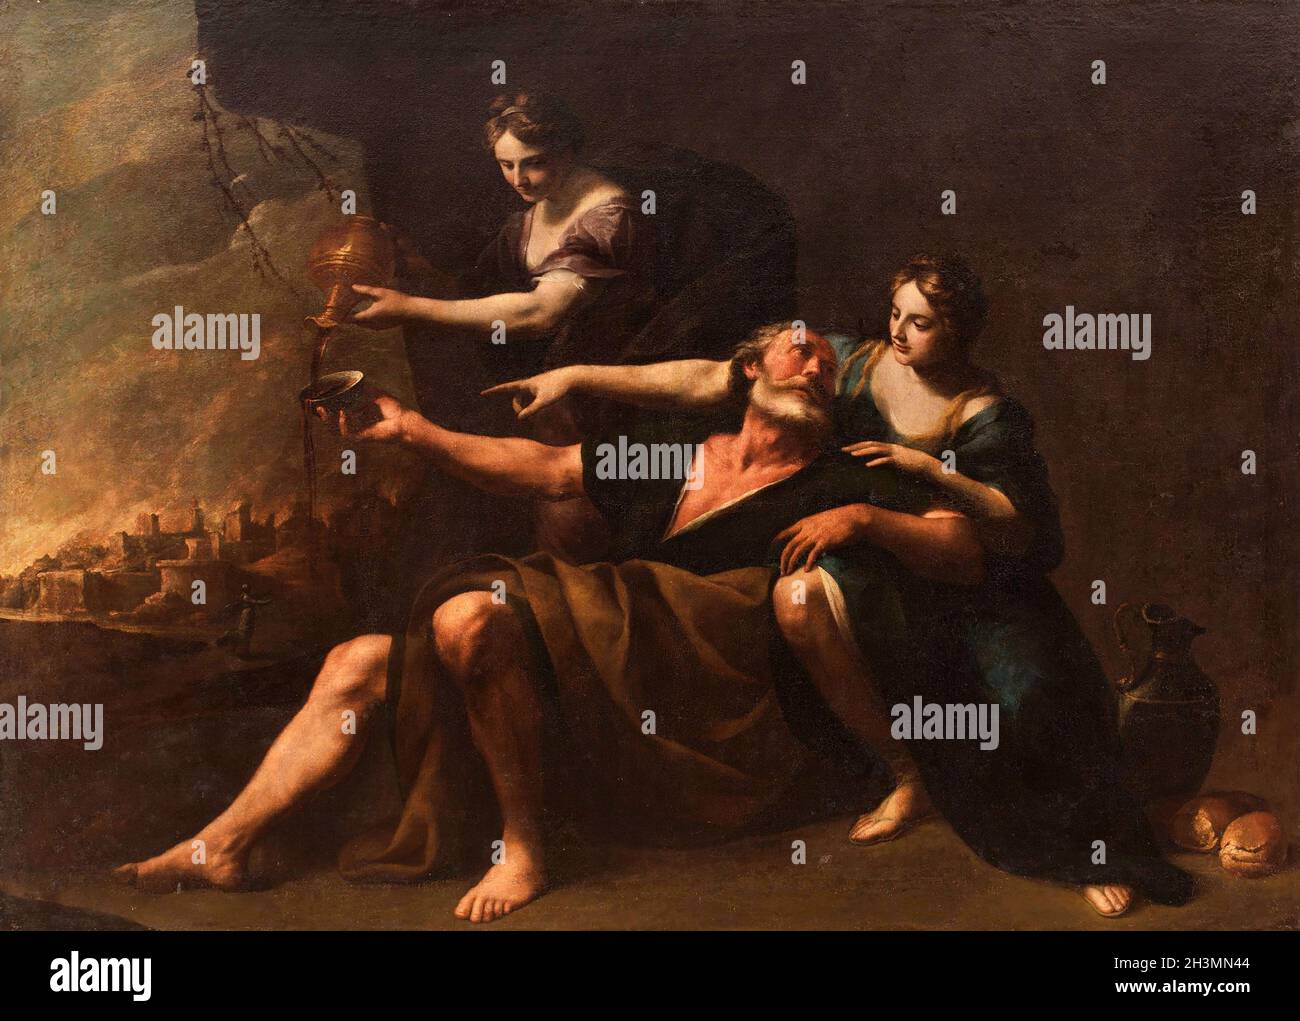 Lotto fatto ubriacare dalle Figlie dall'artista italiano Andrea Vaccaro (1604-1670), olio su tela, 1640/70 Foto Stock